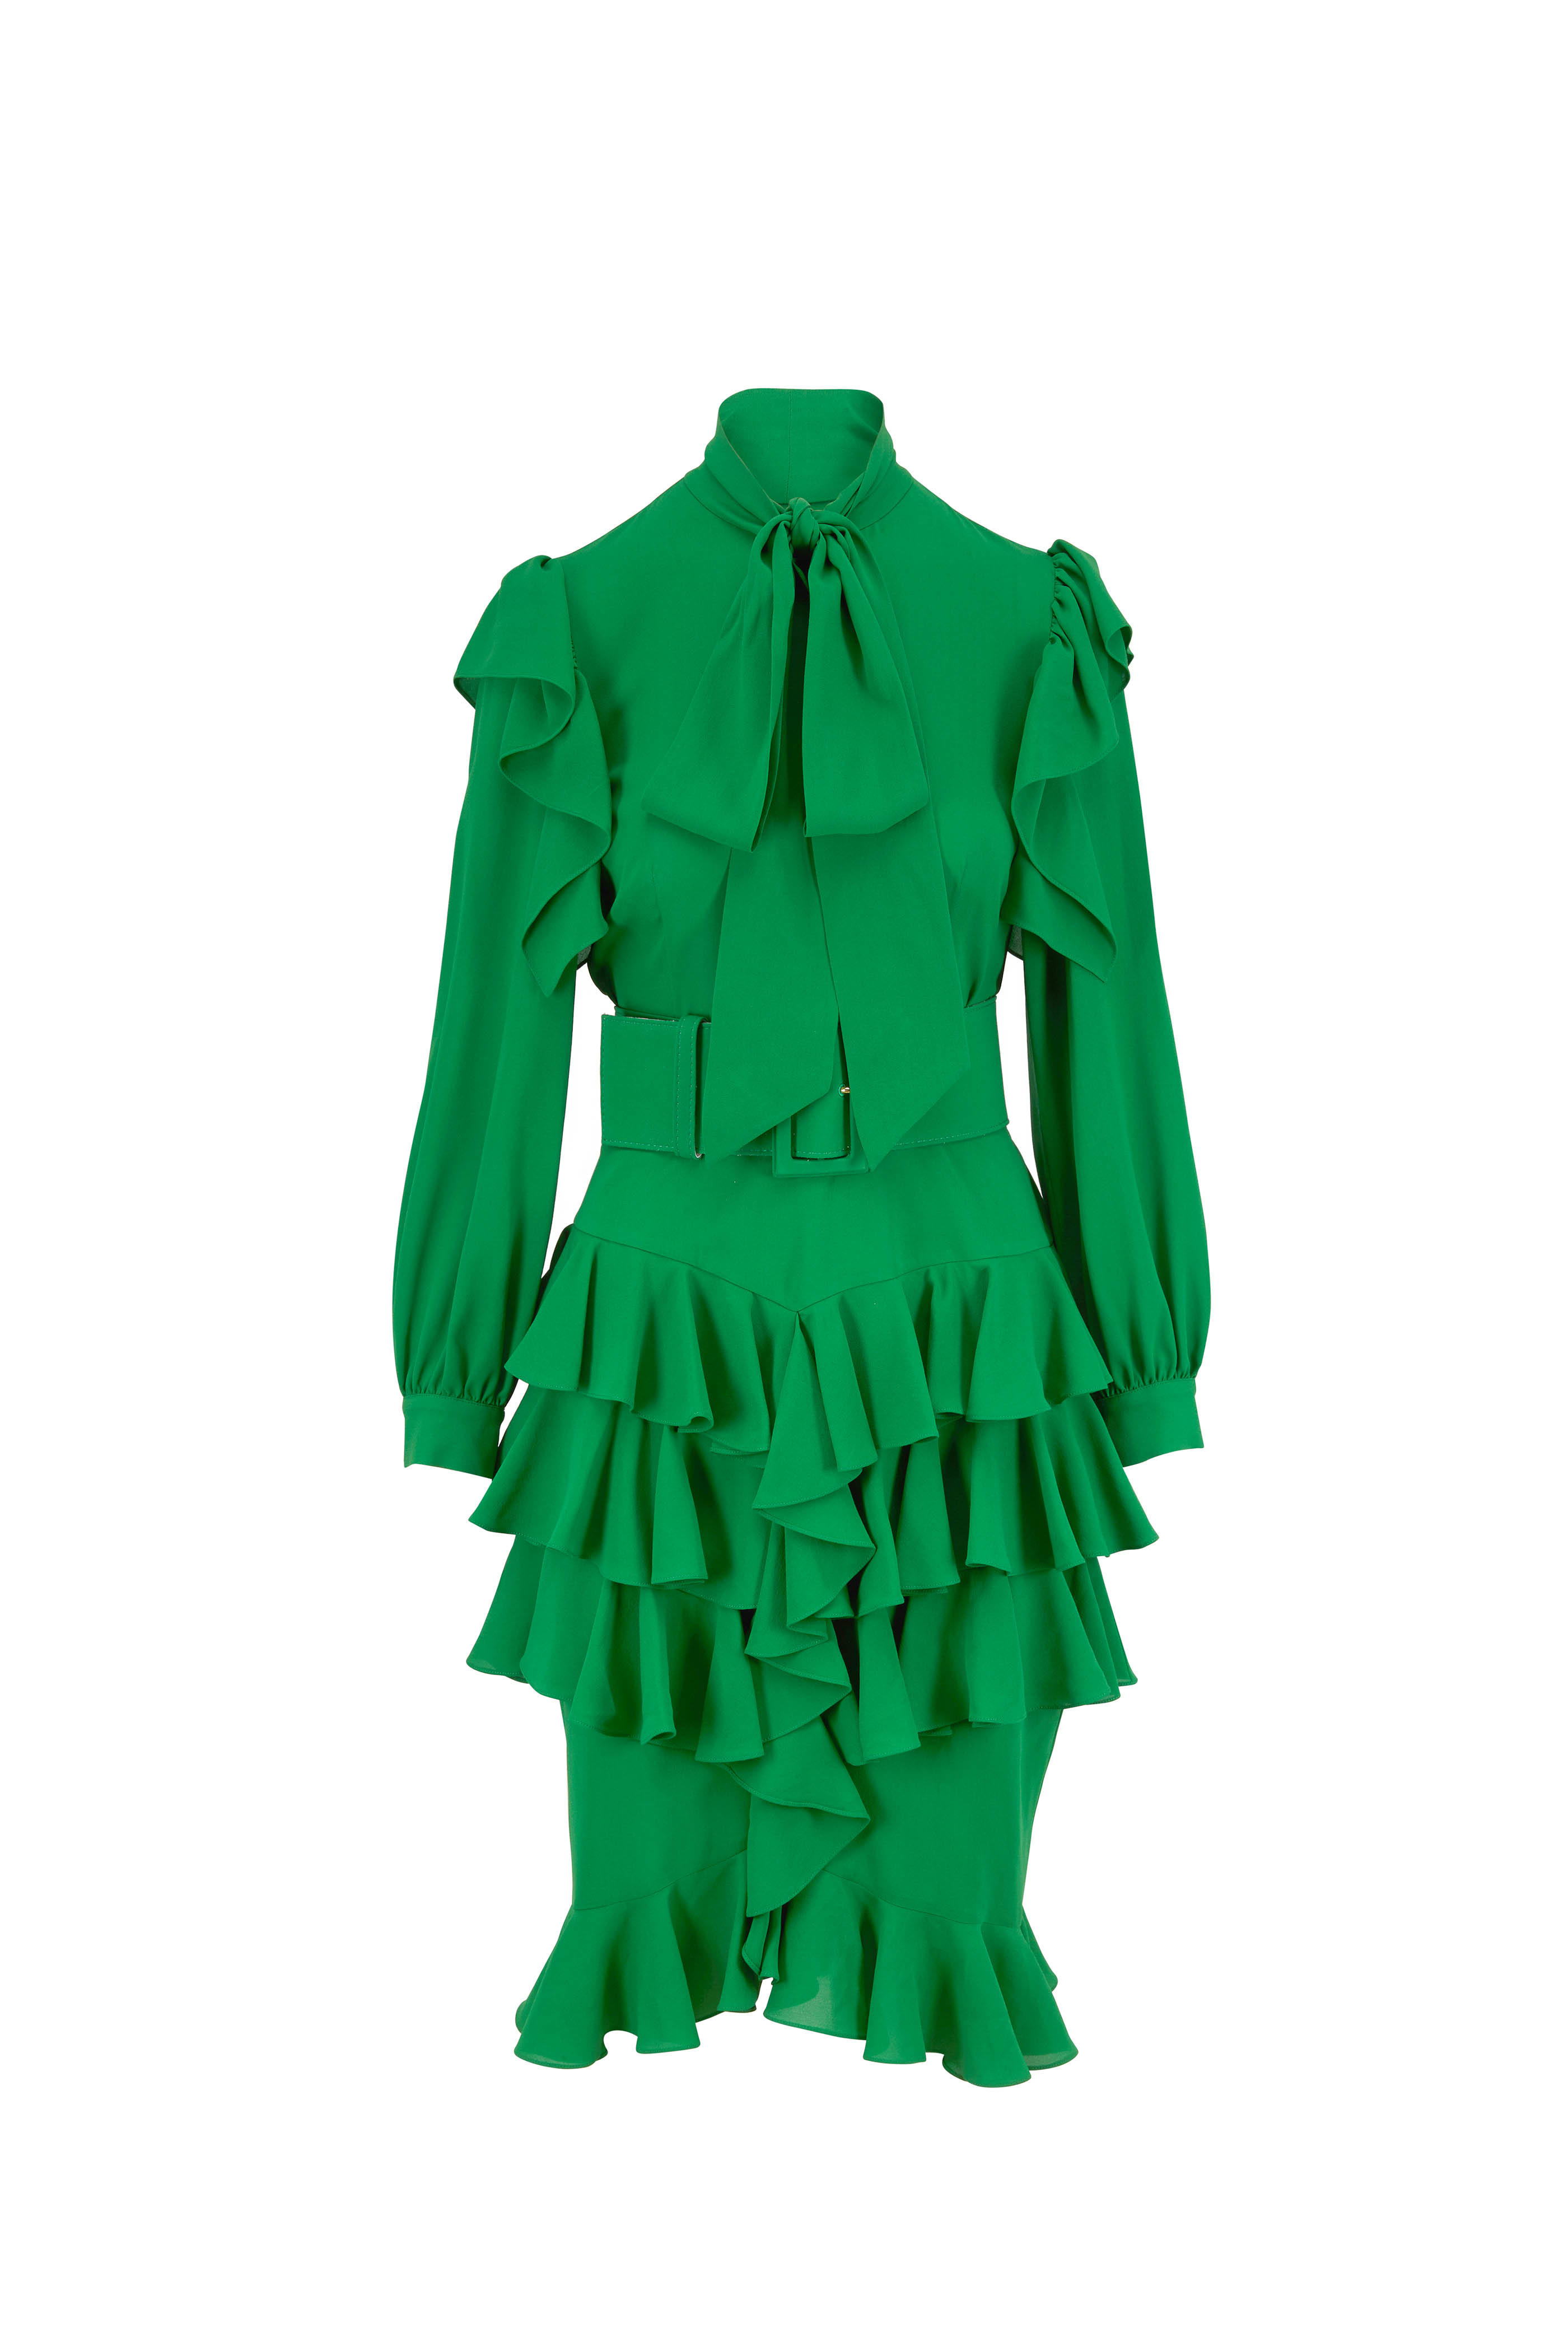 Green Michael Kors Dress Outlet, 54 ...